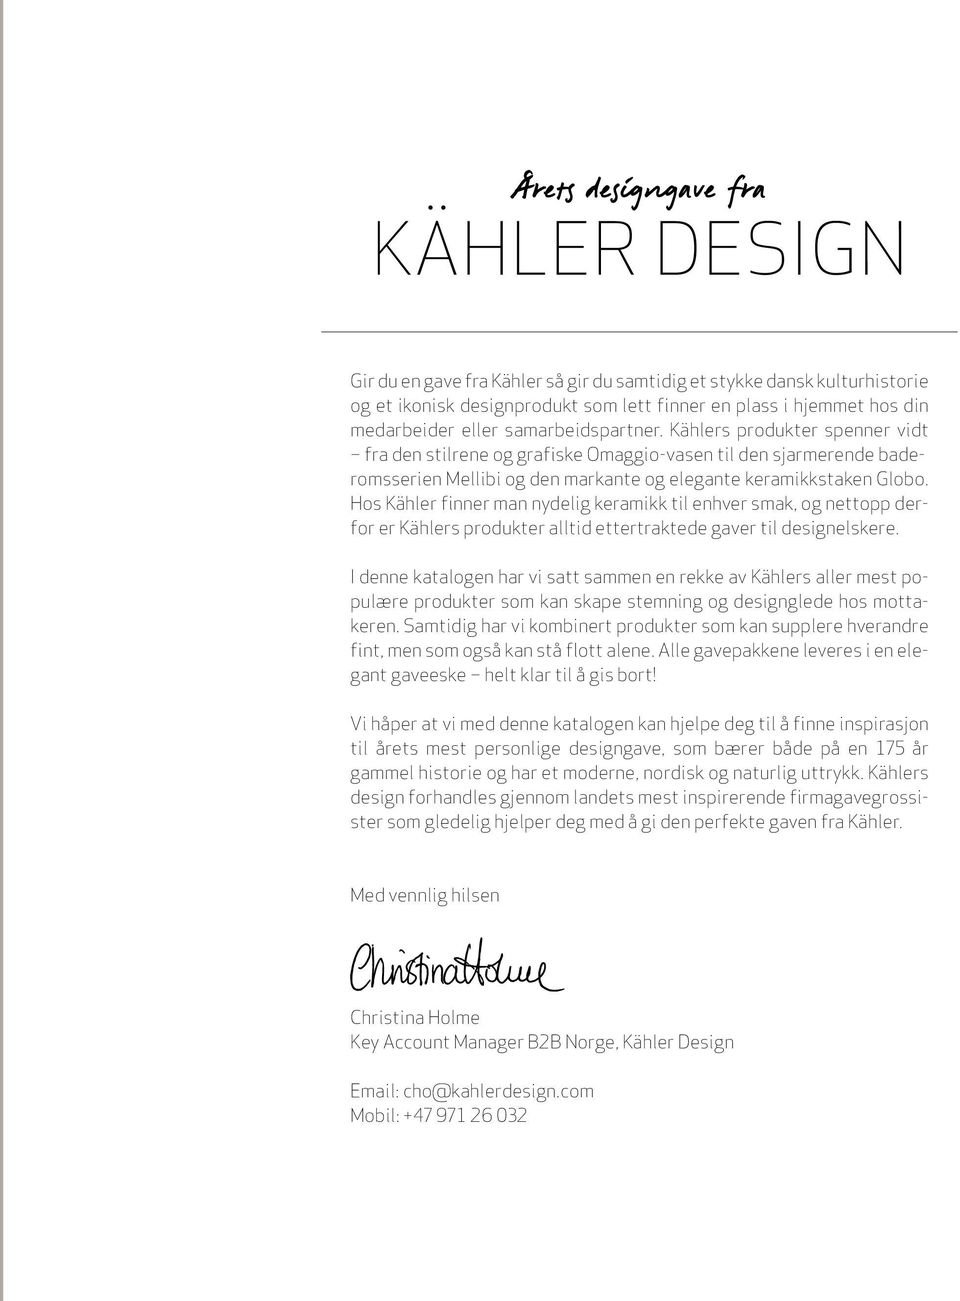 Hos Kähler finner man nydelig keramikk til enhver smak, og nettopp derfor er Kählers produkter alltid ettertraktede gaver til designelskere.